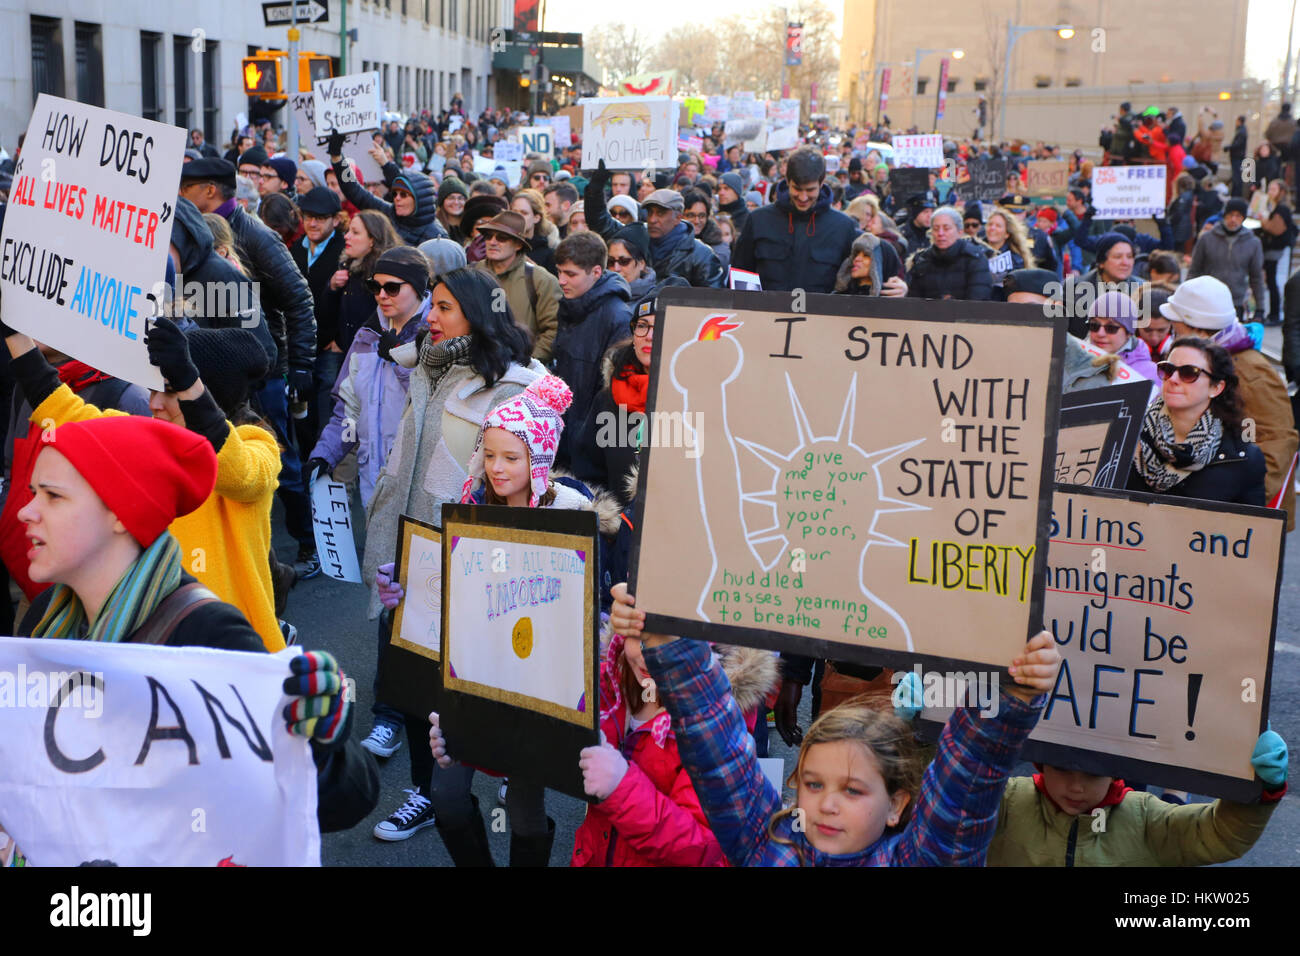 Nueva York, EE.UU. 29 de enero de 2017. La gente tiene señales, y marchando al edificio federal Jacob K. Javits en Foley Square. 29 de enero de 2017 Foto de stock